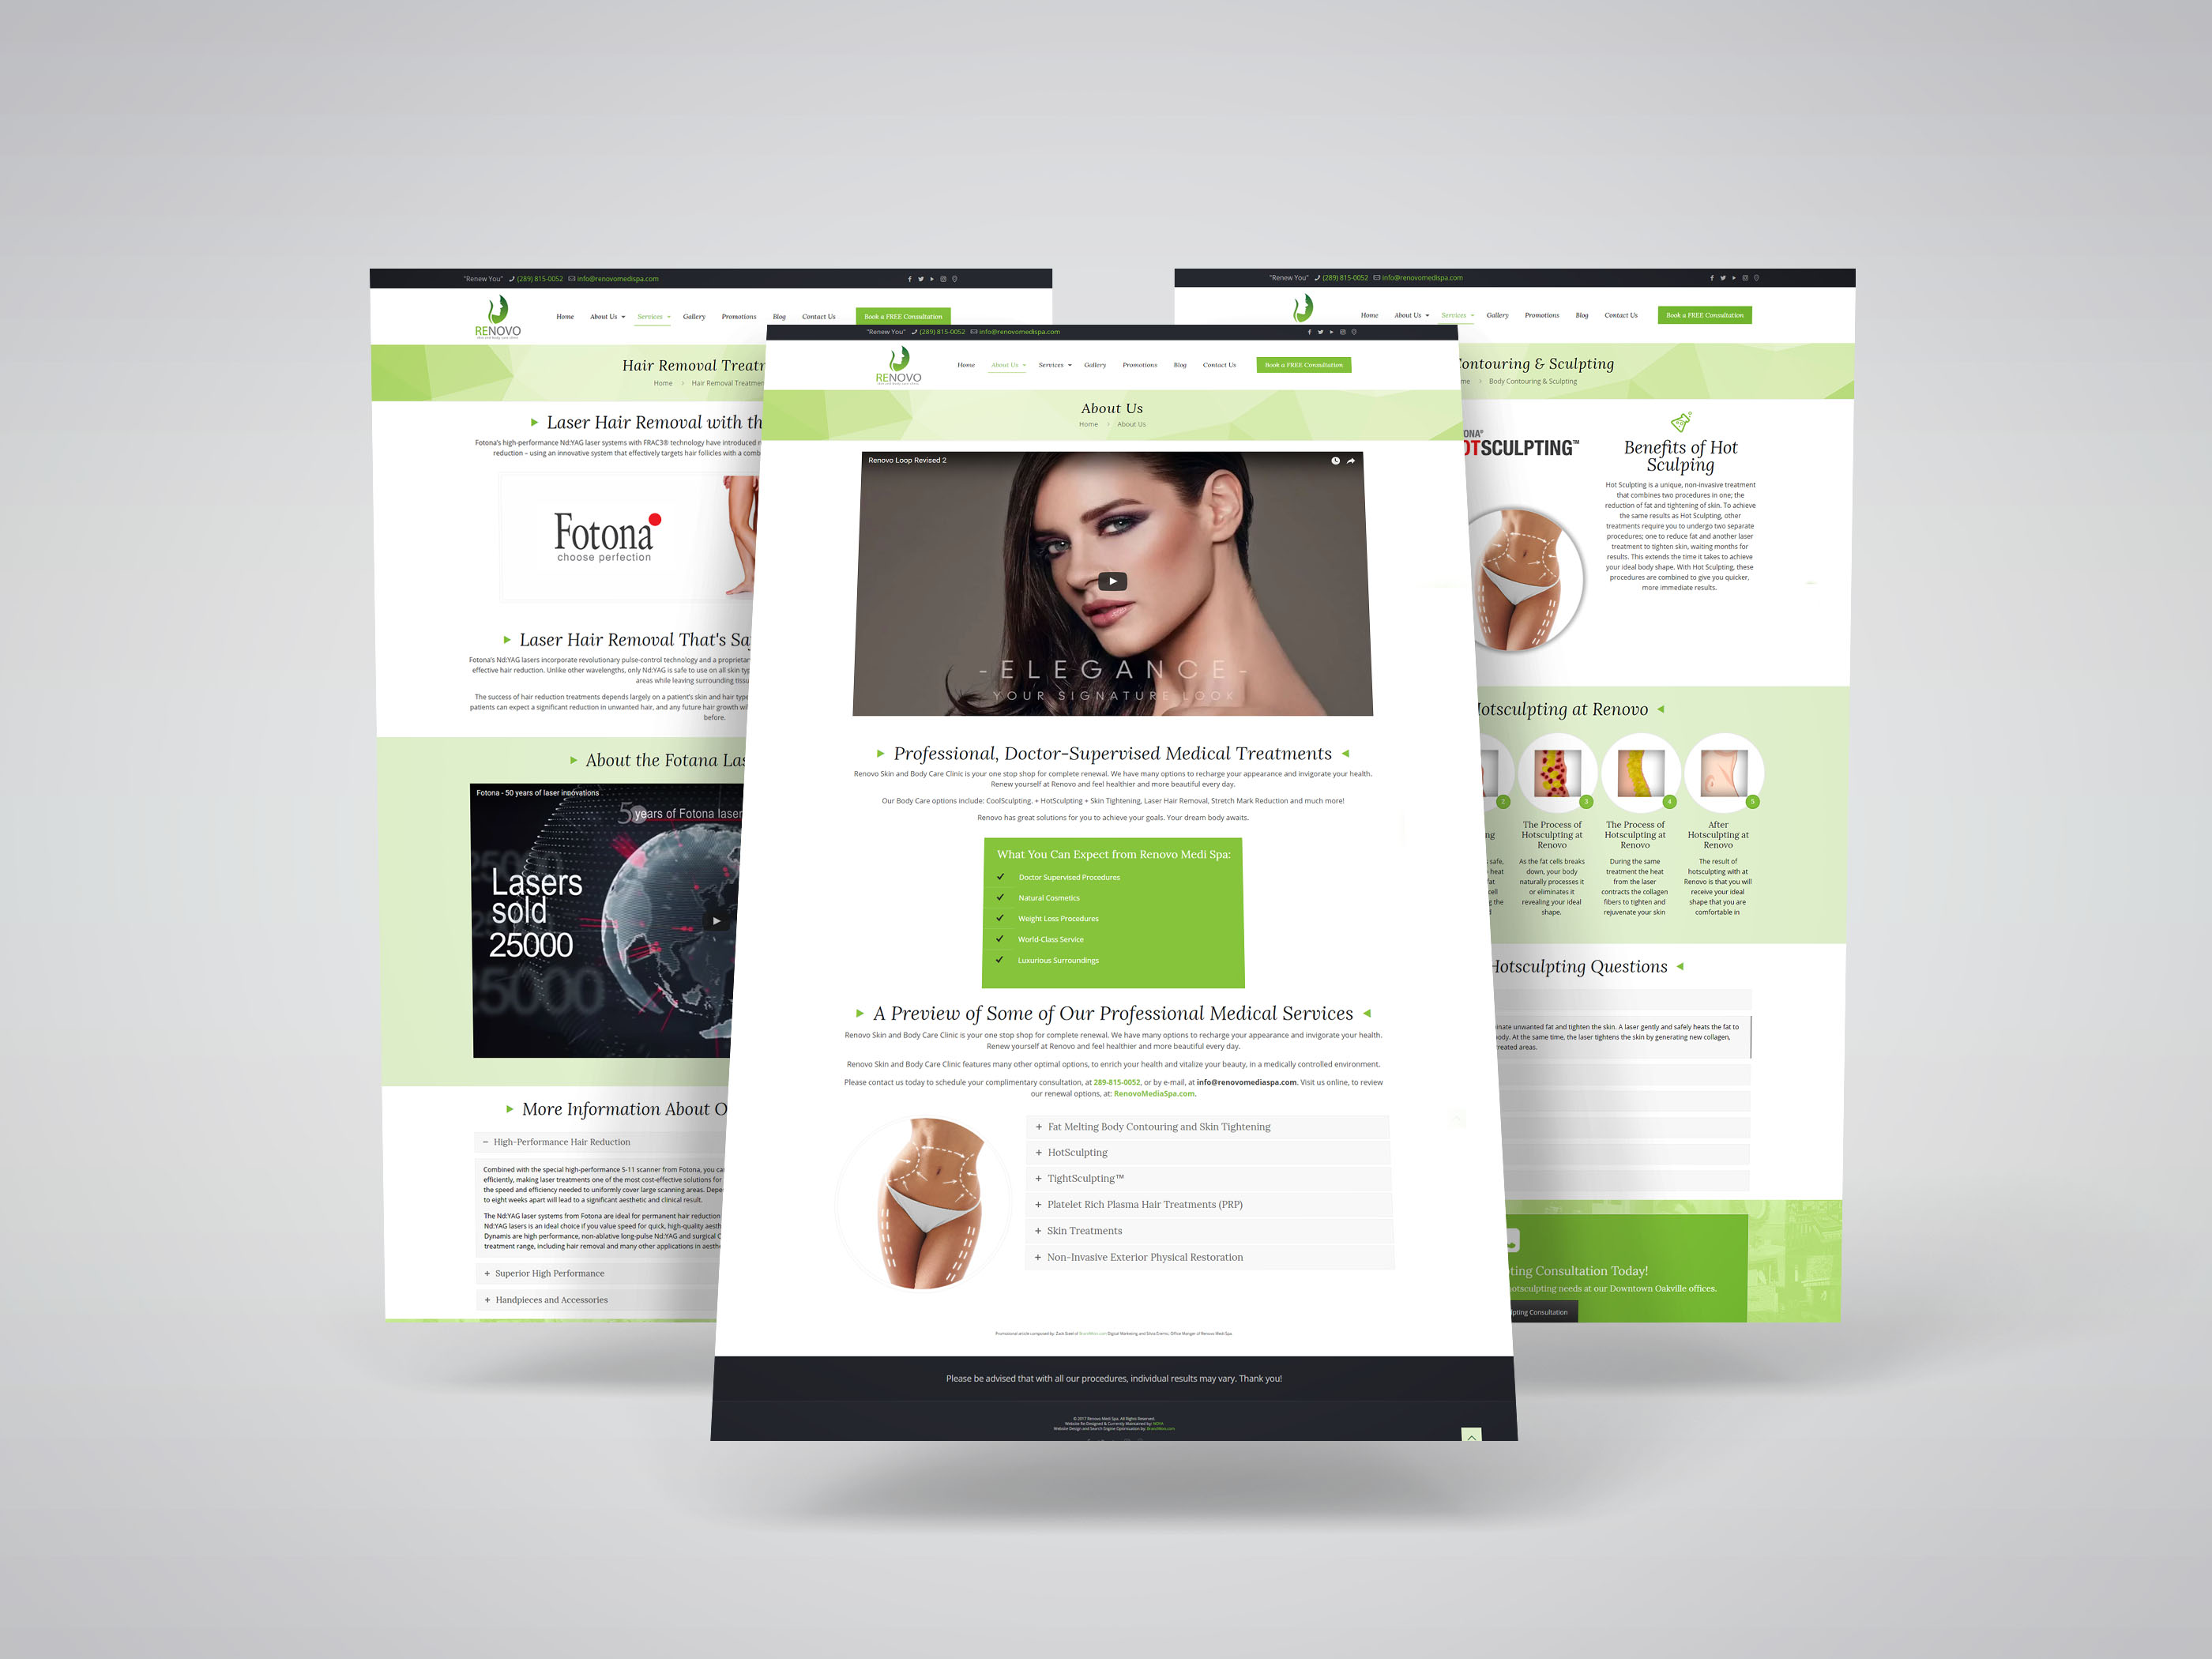 Medi Spa Website Design for Renovo Medi Spa, an Oakville-based medi spa